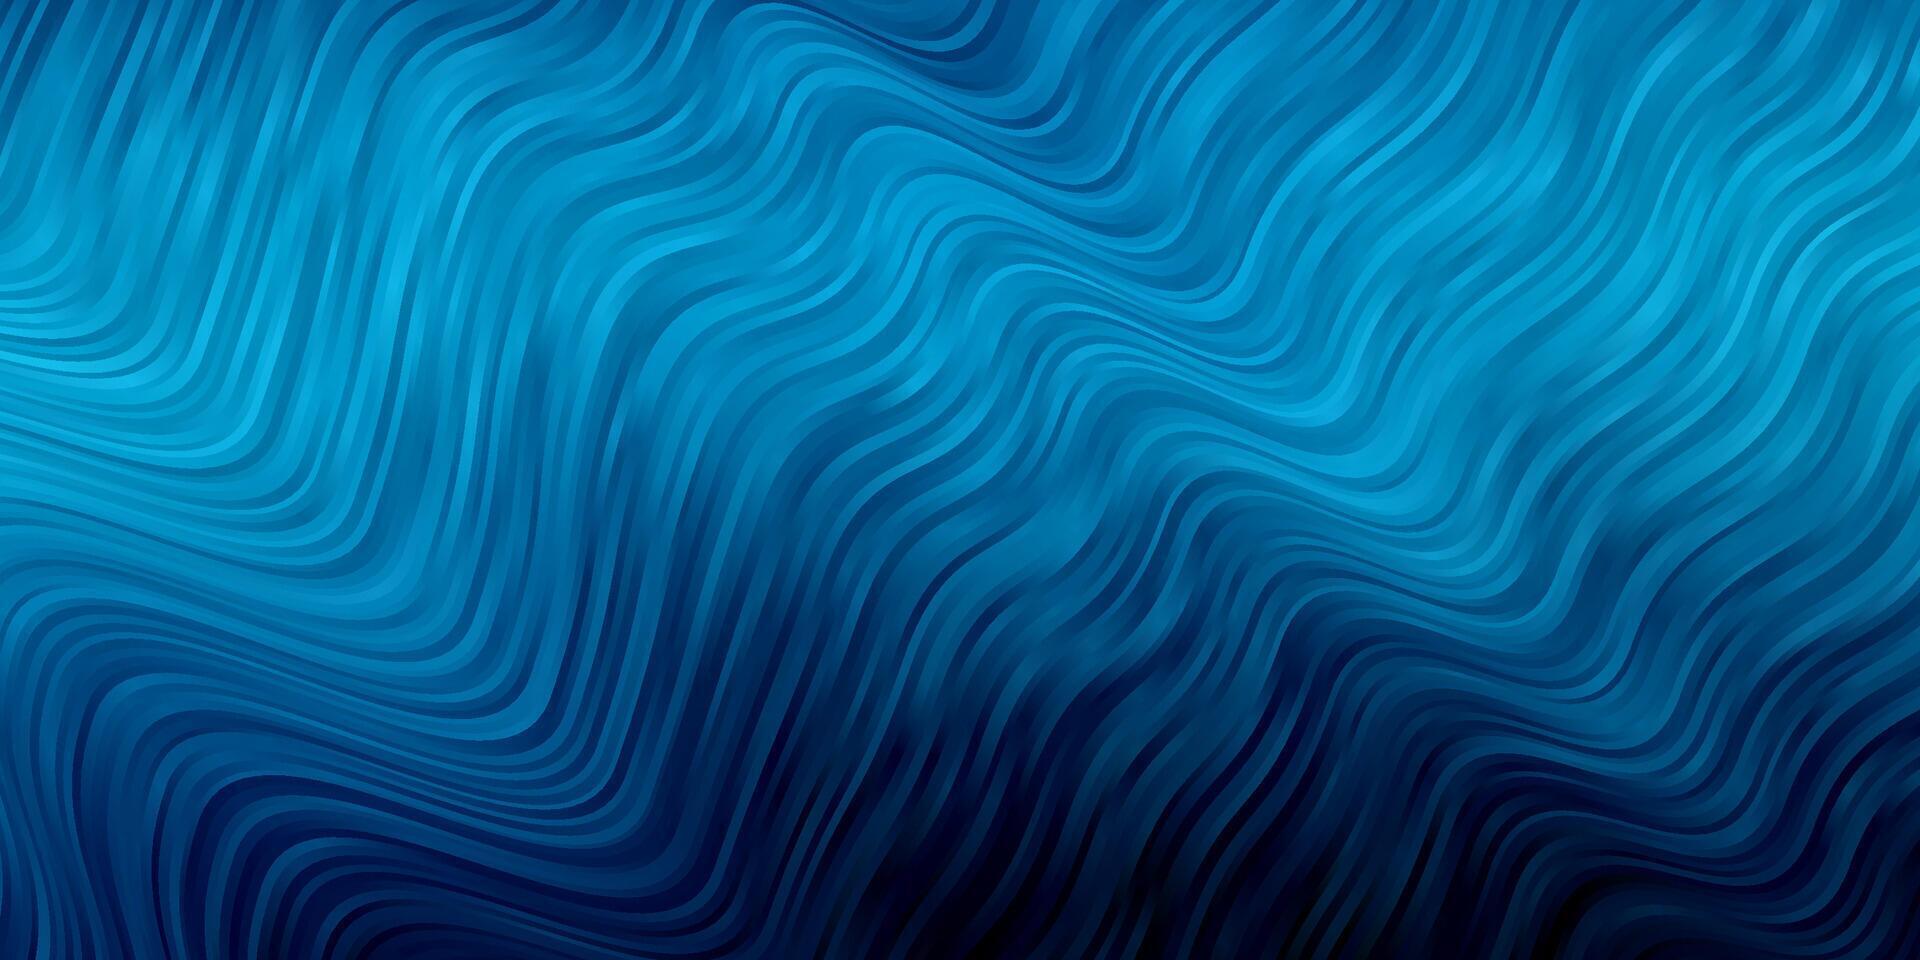 Fondo de vector azul oscuro con líneas dobladas.